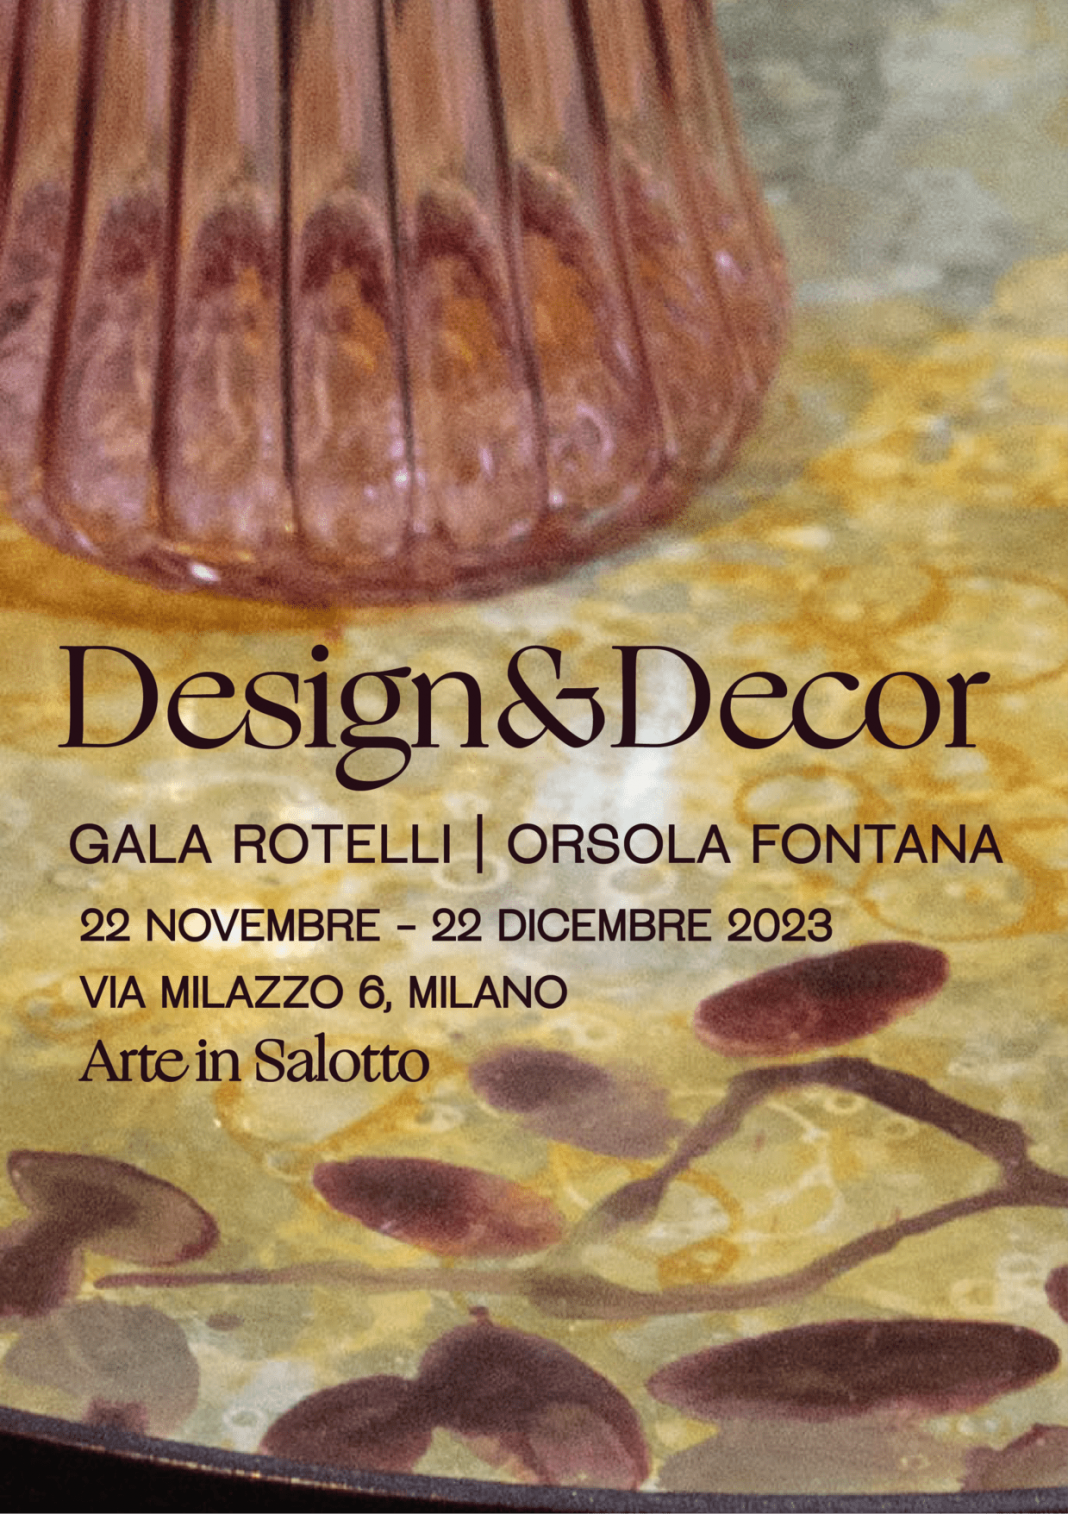 Design&Decor – Arte in Salotto ospita le nuove creazioni di Gala Rotelli e Orsola Fontanahttps://www.exibart.com/repository/media/formidable/11/img/b62/DesignDecor-Locandina-Arte-in-Salotto-1068x1514.png